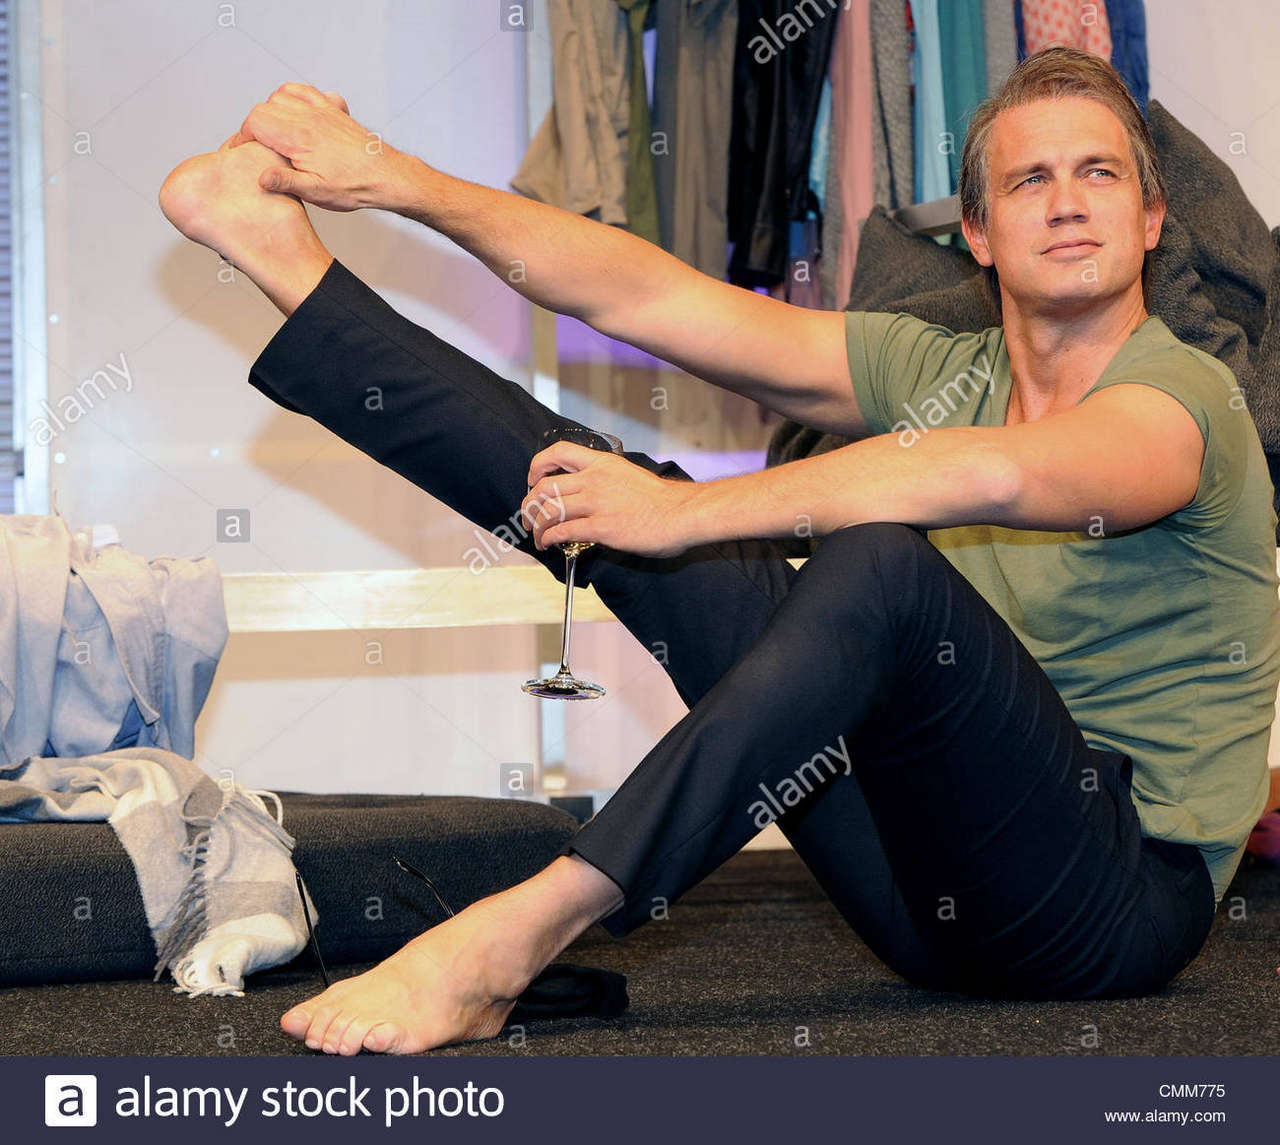 Ralf Bauer Feet